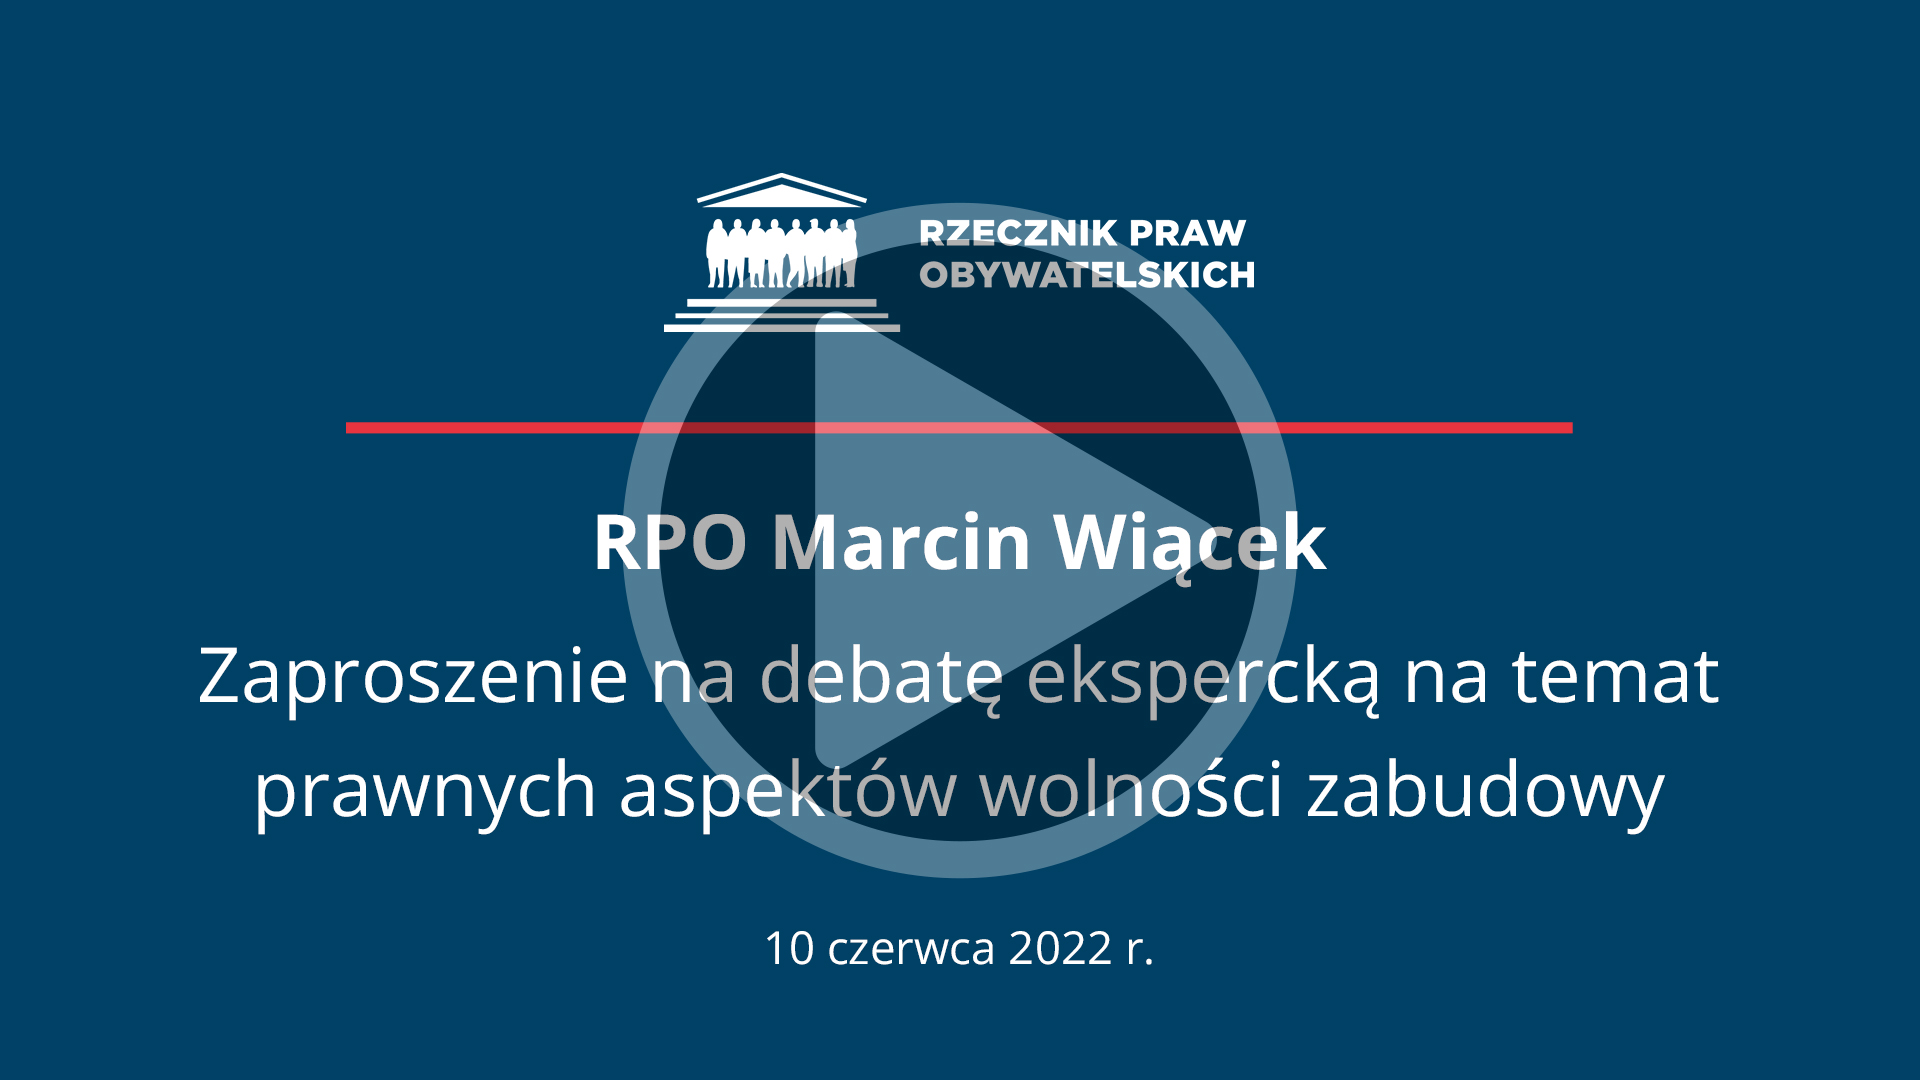 Plansza z napisem RPO Marcin Wiącek - Zaproszenie na debatę ekspercką na temat prawnych aspektów wolności zabudowy - 10 czerwca 2022 r. i przyciskiem odtwarzania wideo